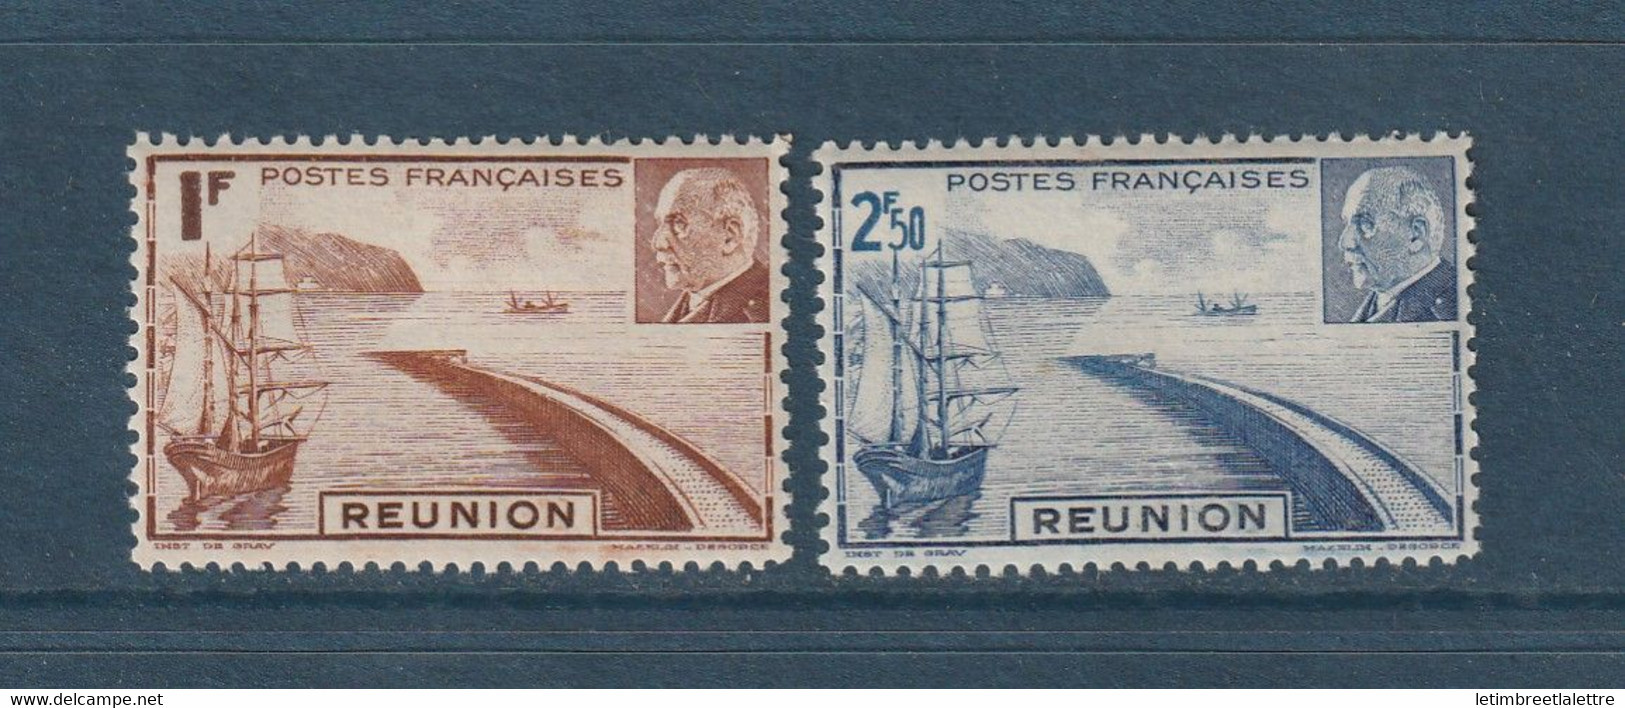 Réunion - YT N° 178 à 179 ** - Neuf Sans Charnière - 1941 - Neufs